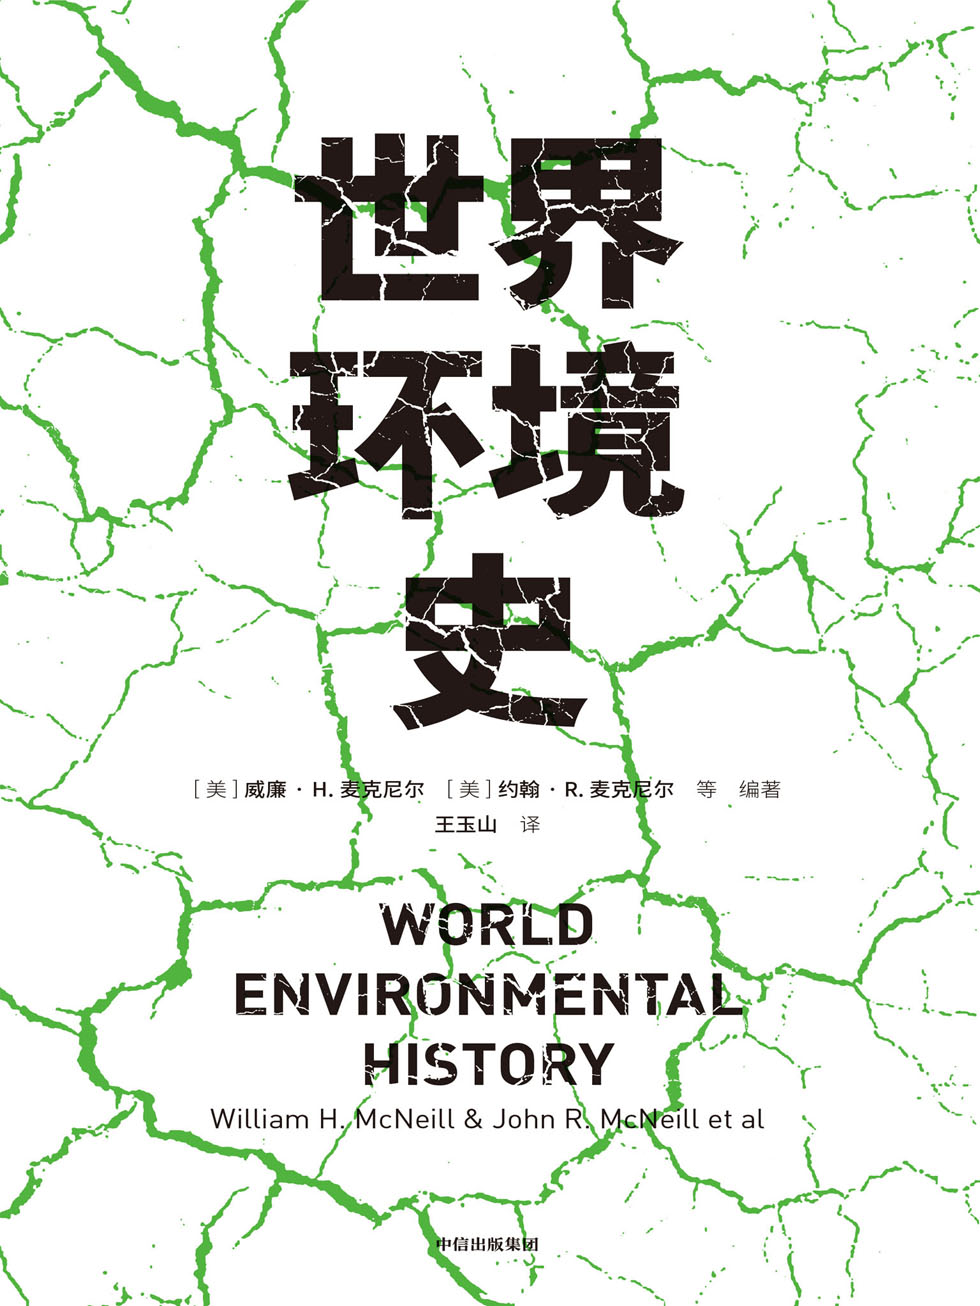 世界环境史（见识丛书47）—威廉·h·麦克尼尔 & 约翰·r·麦克尼尔 & 王玉山—pdf+mobi+epub+txt+azw3电子书下载